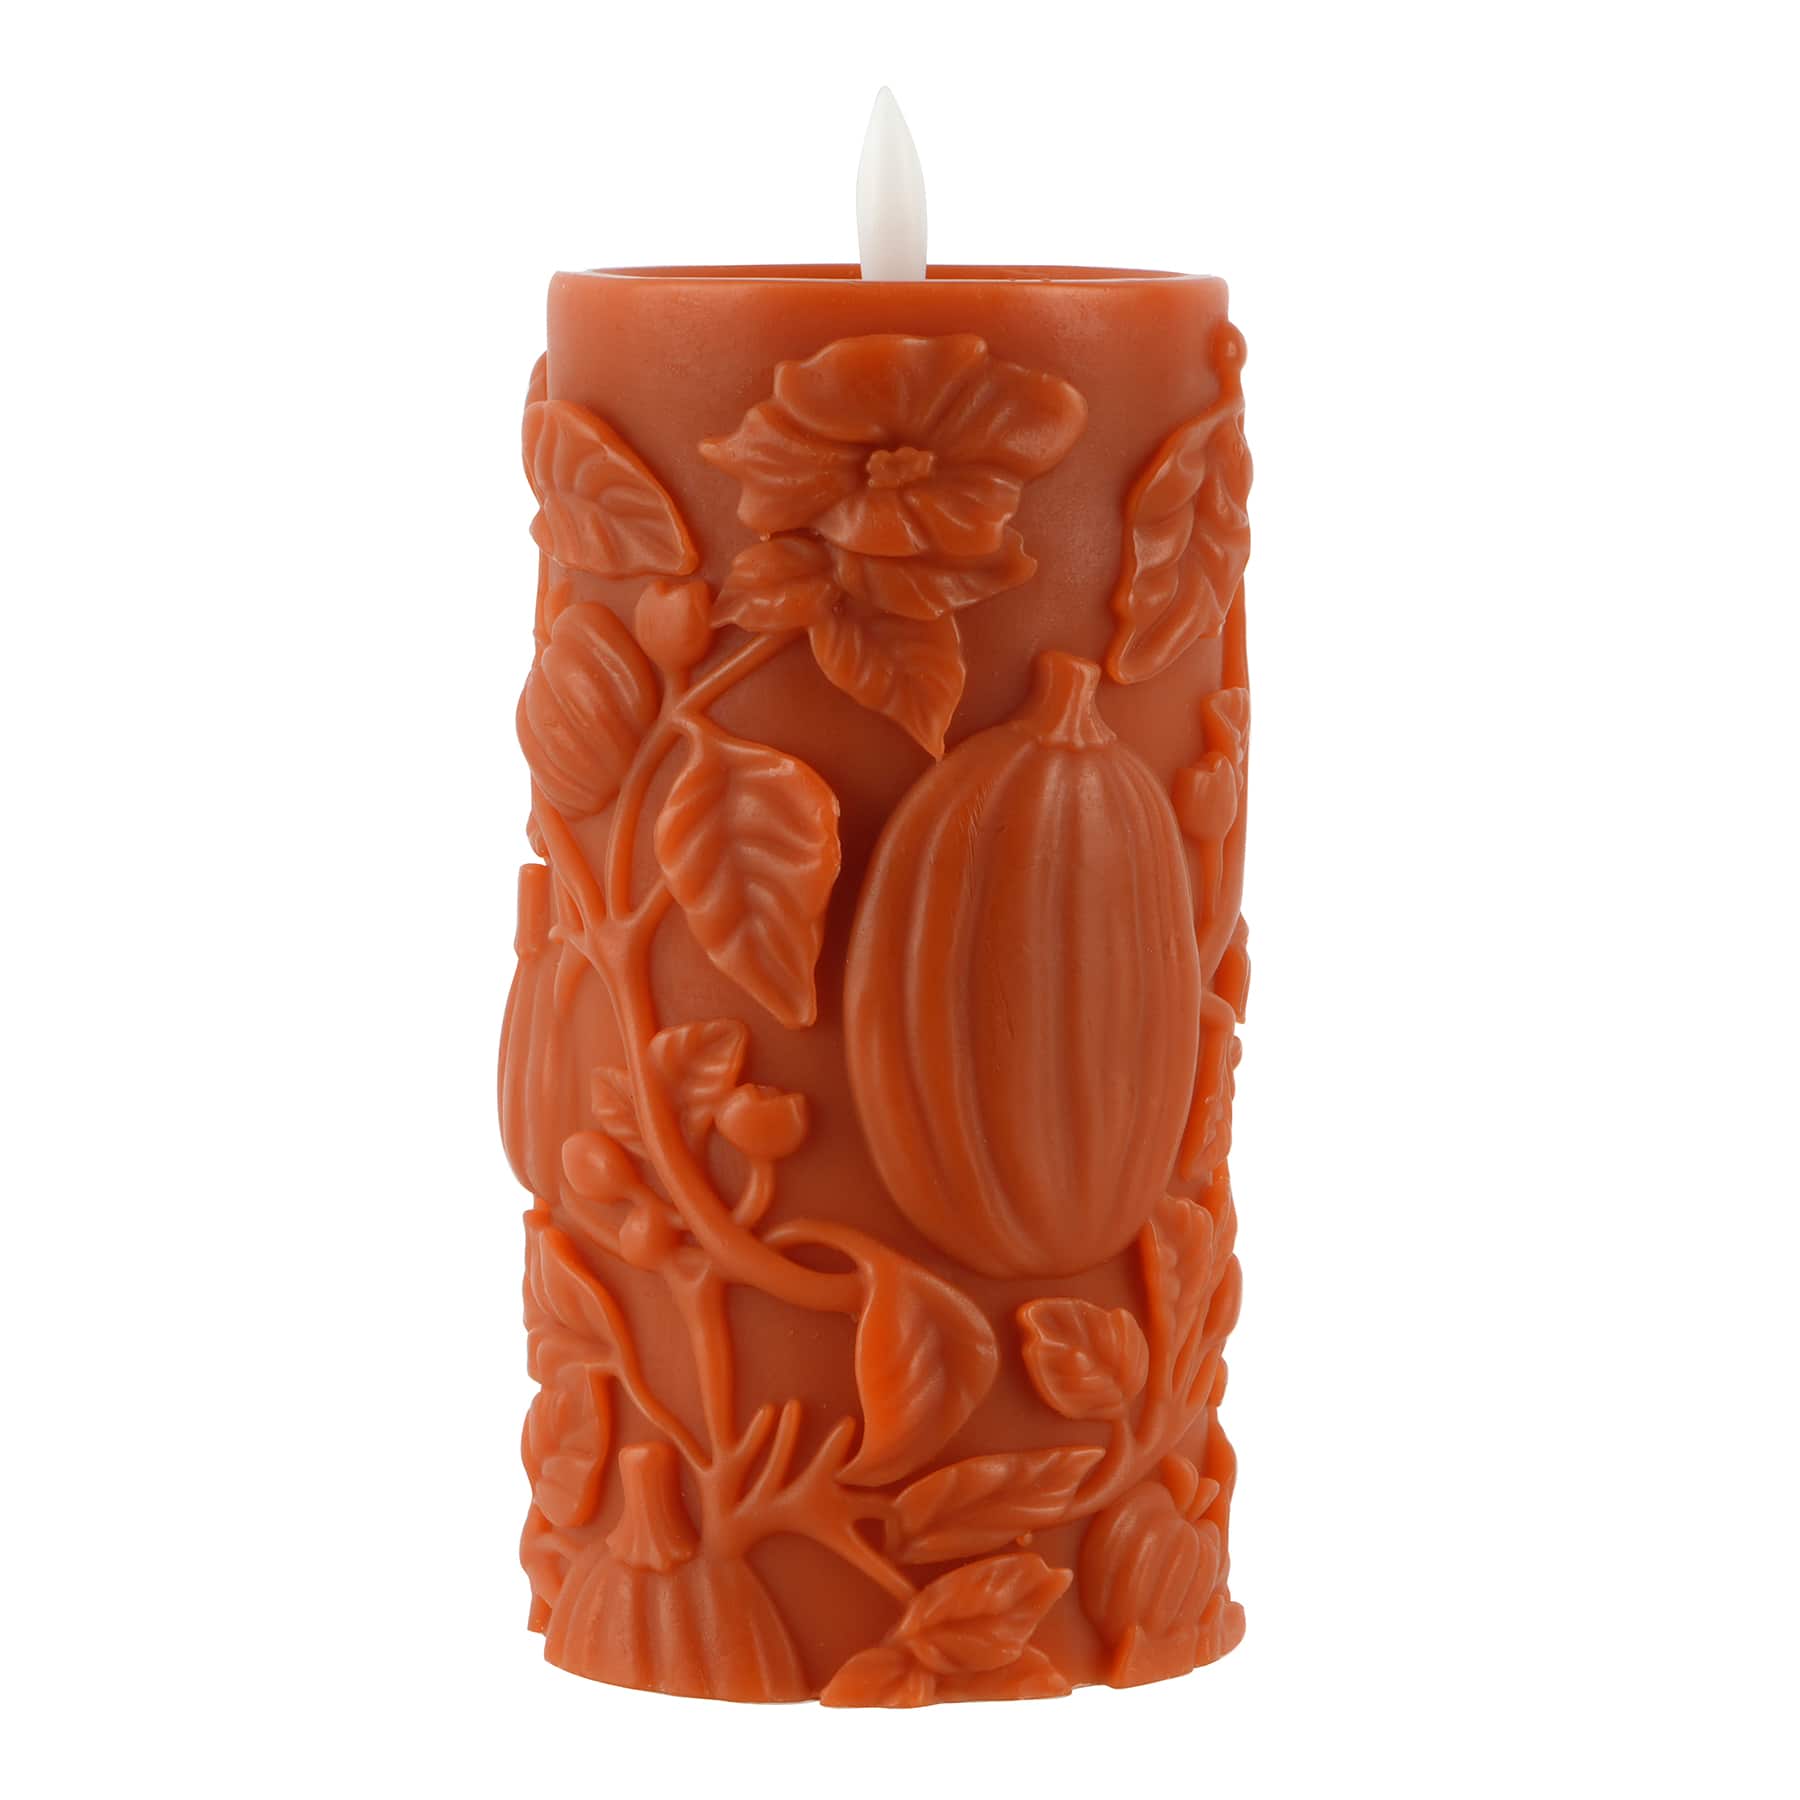 3&#x22; x 6&#x22; Orange Pumpkin LED Pillar Candle by Ashland&#xAE;